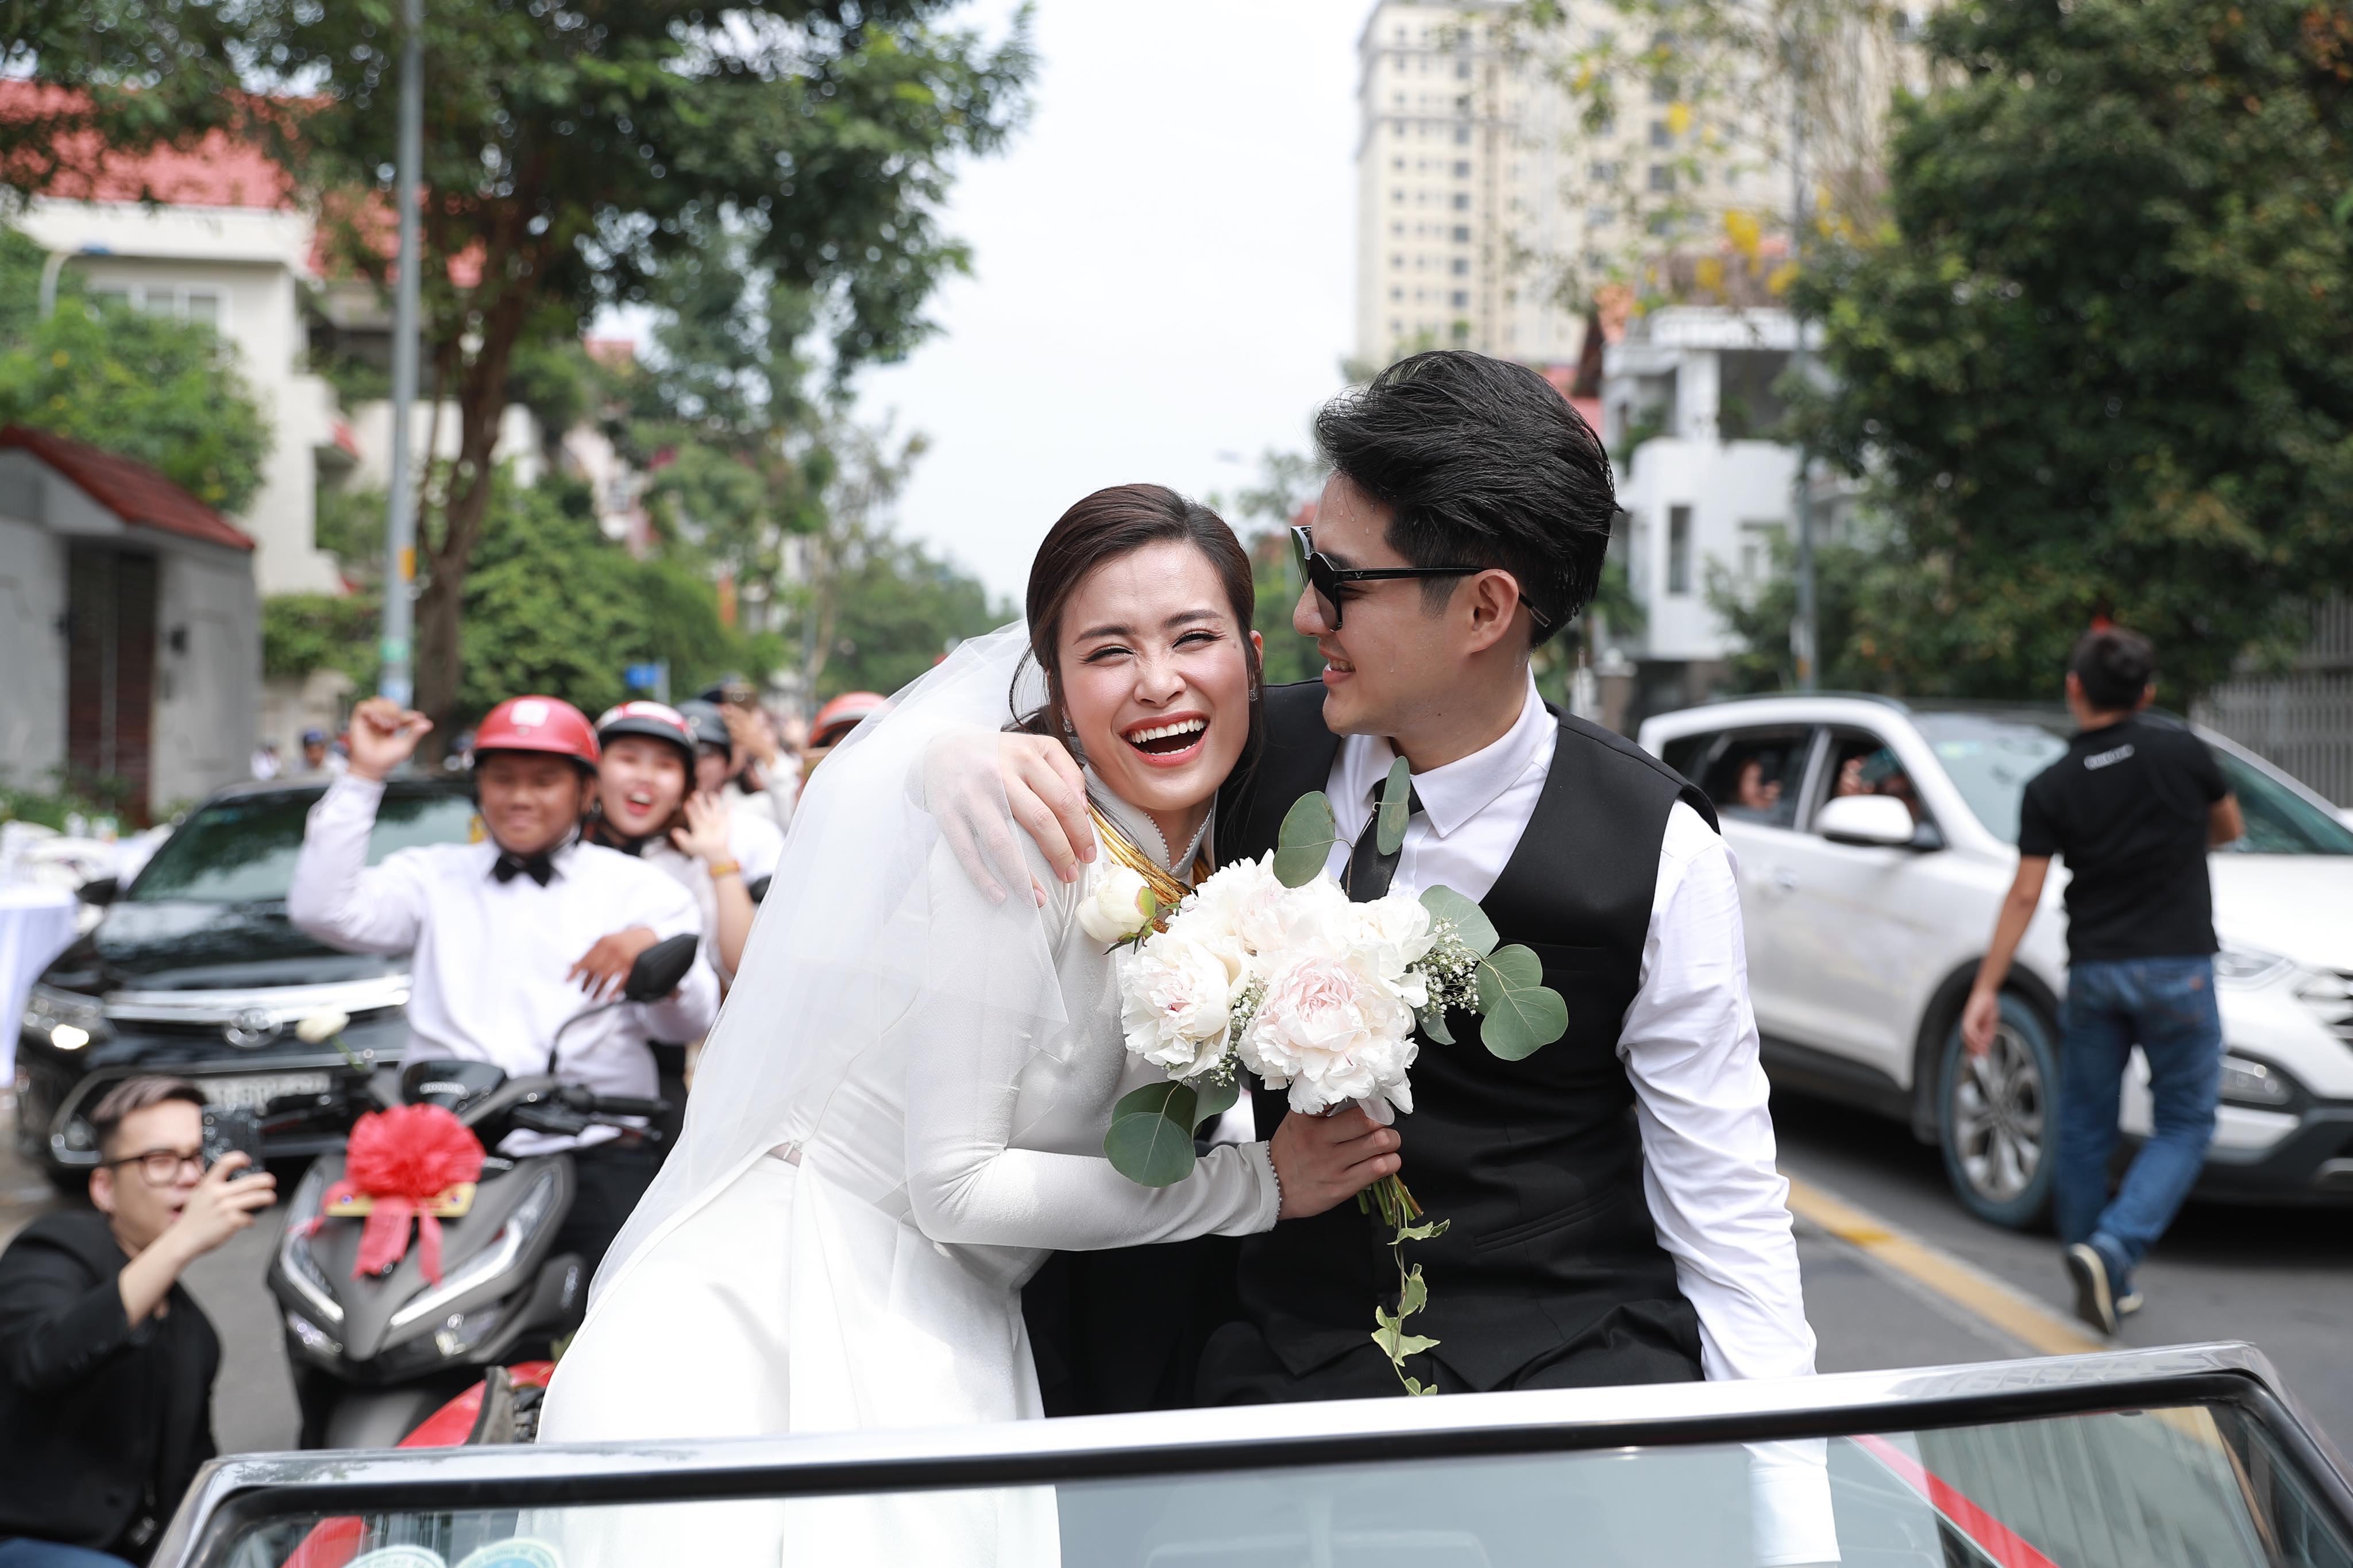 Hé lộ 2 váy cưới chính thức của Đông Nhi trong ngày cưới Ông Cao Thắng   Thế giới Showbiz